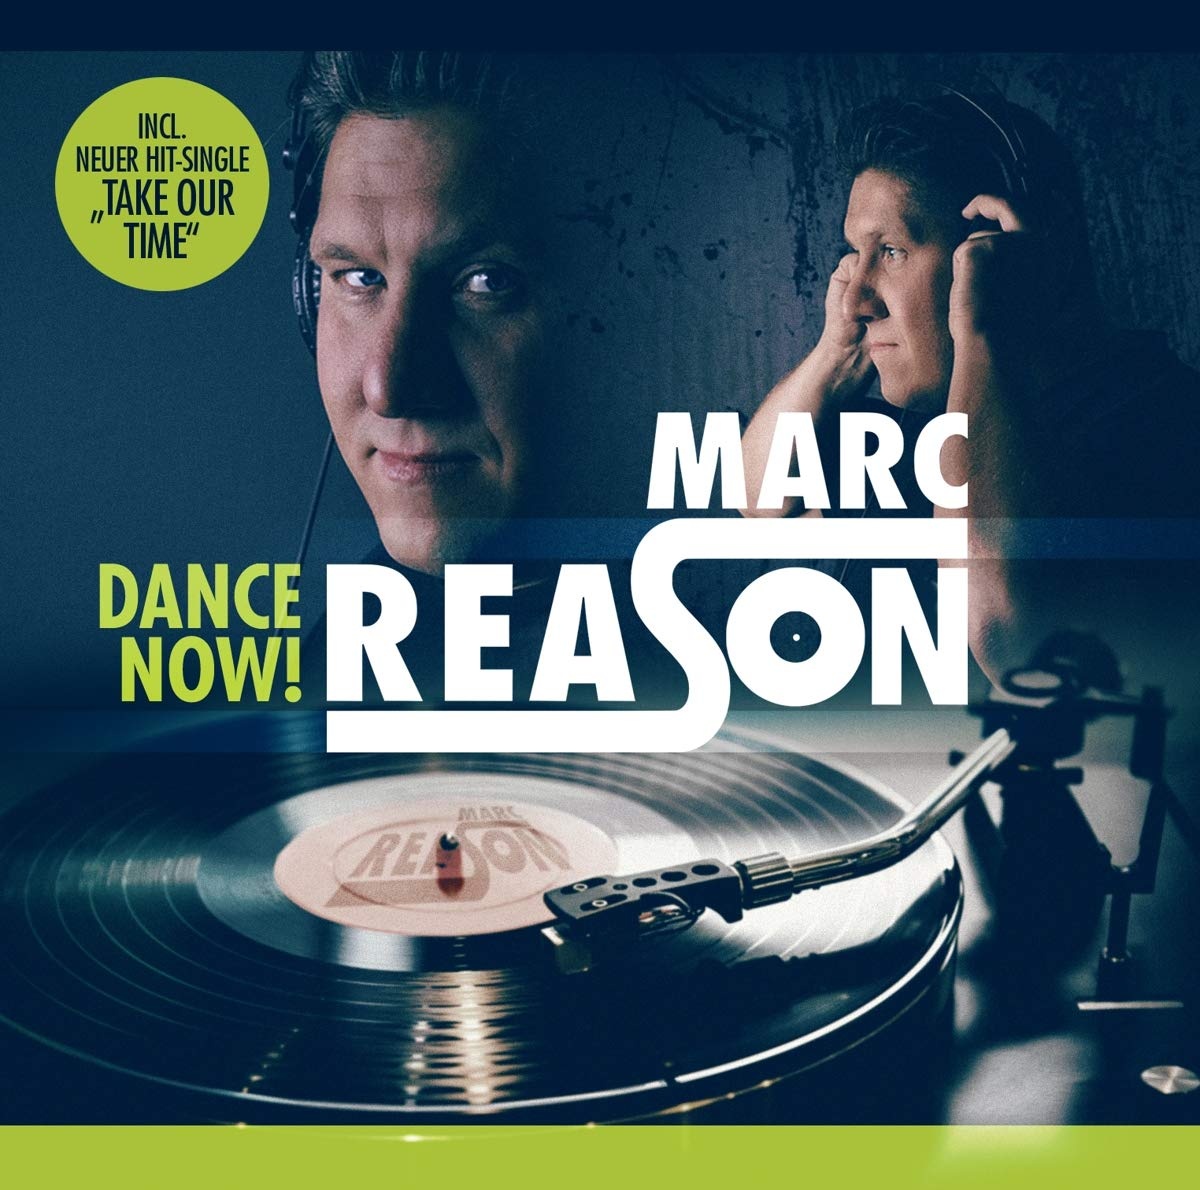 Reason музыка. Песня из 90 Marc reason.